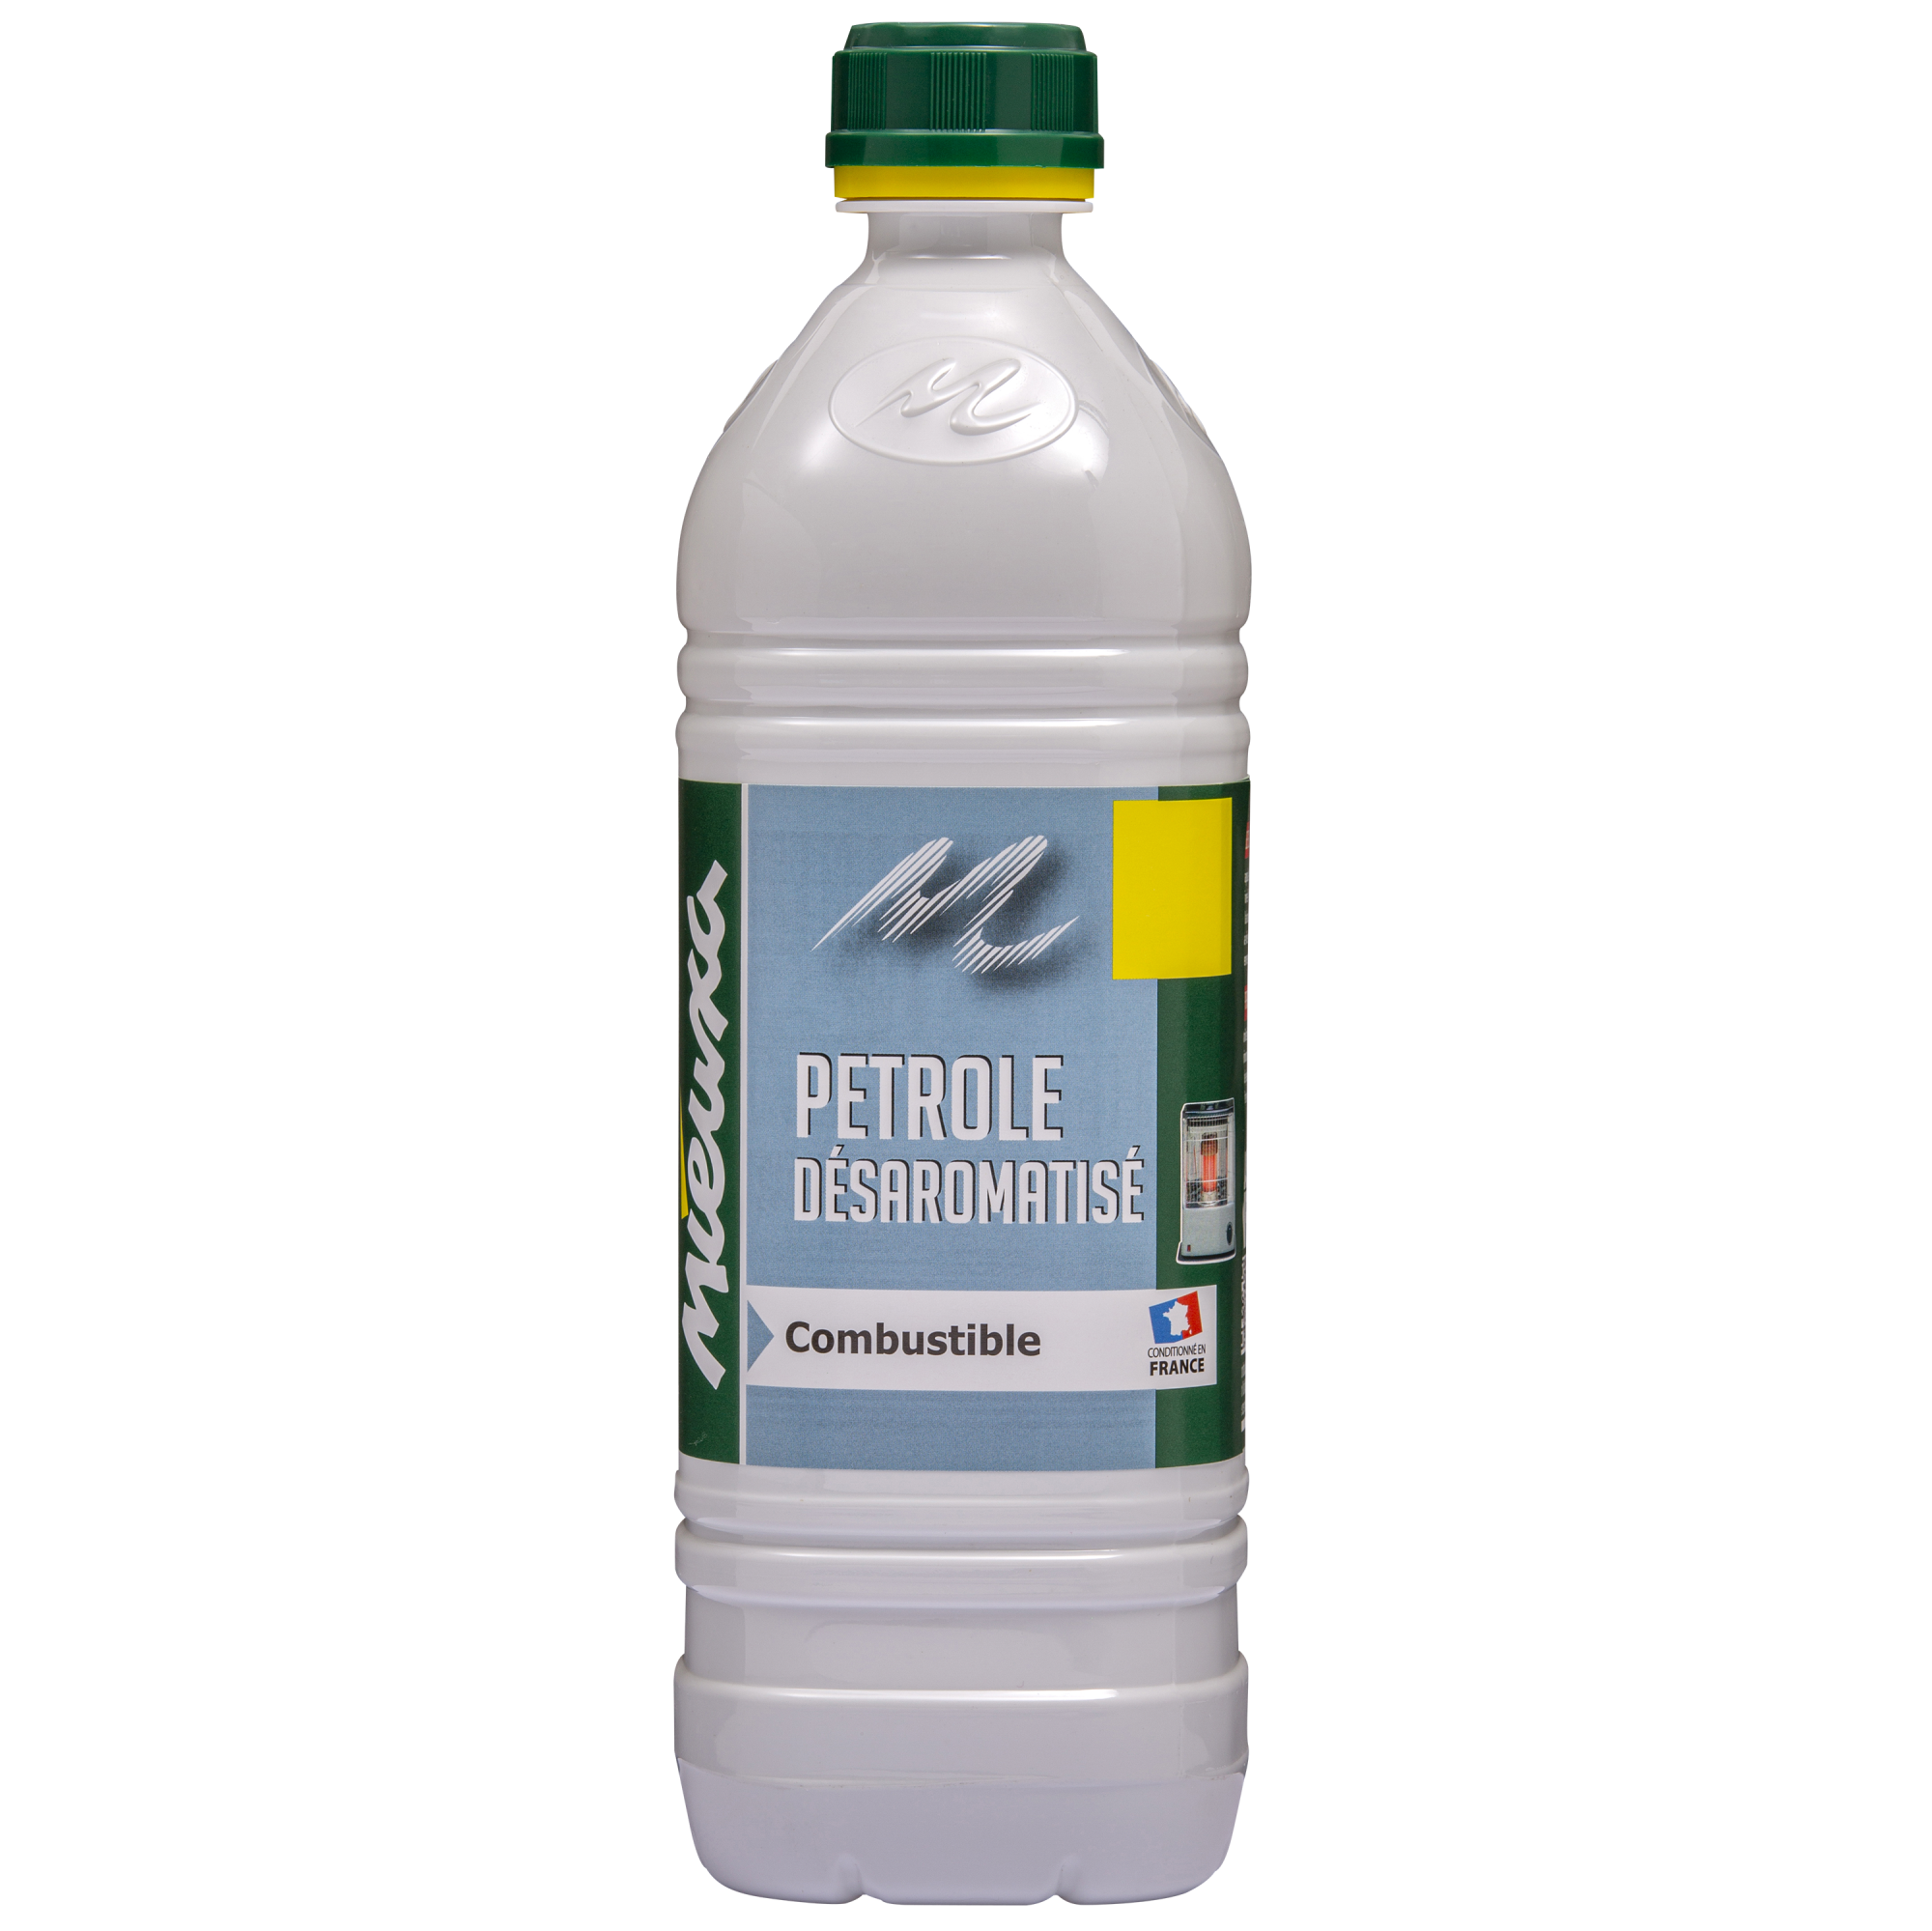 Petrole desaromatise - 1l - Quincaillerie Calédonienne